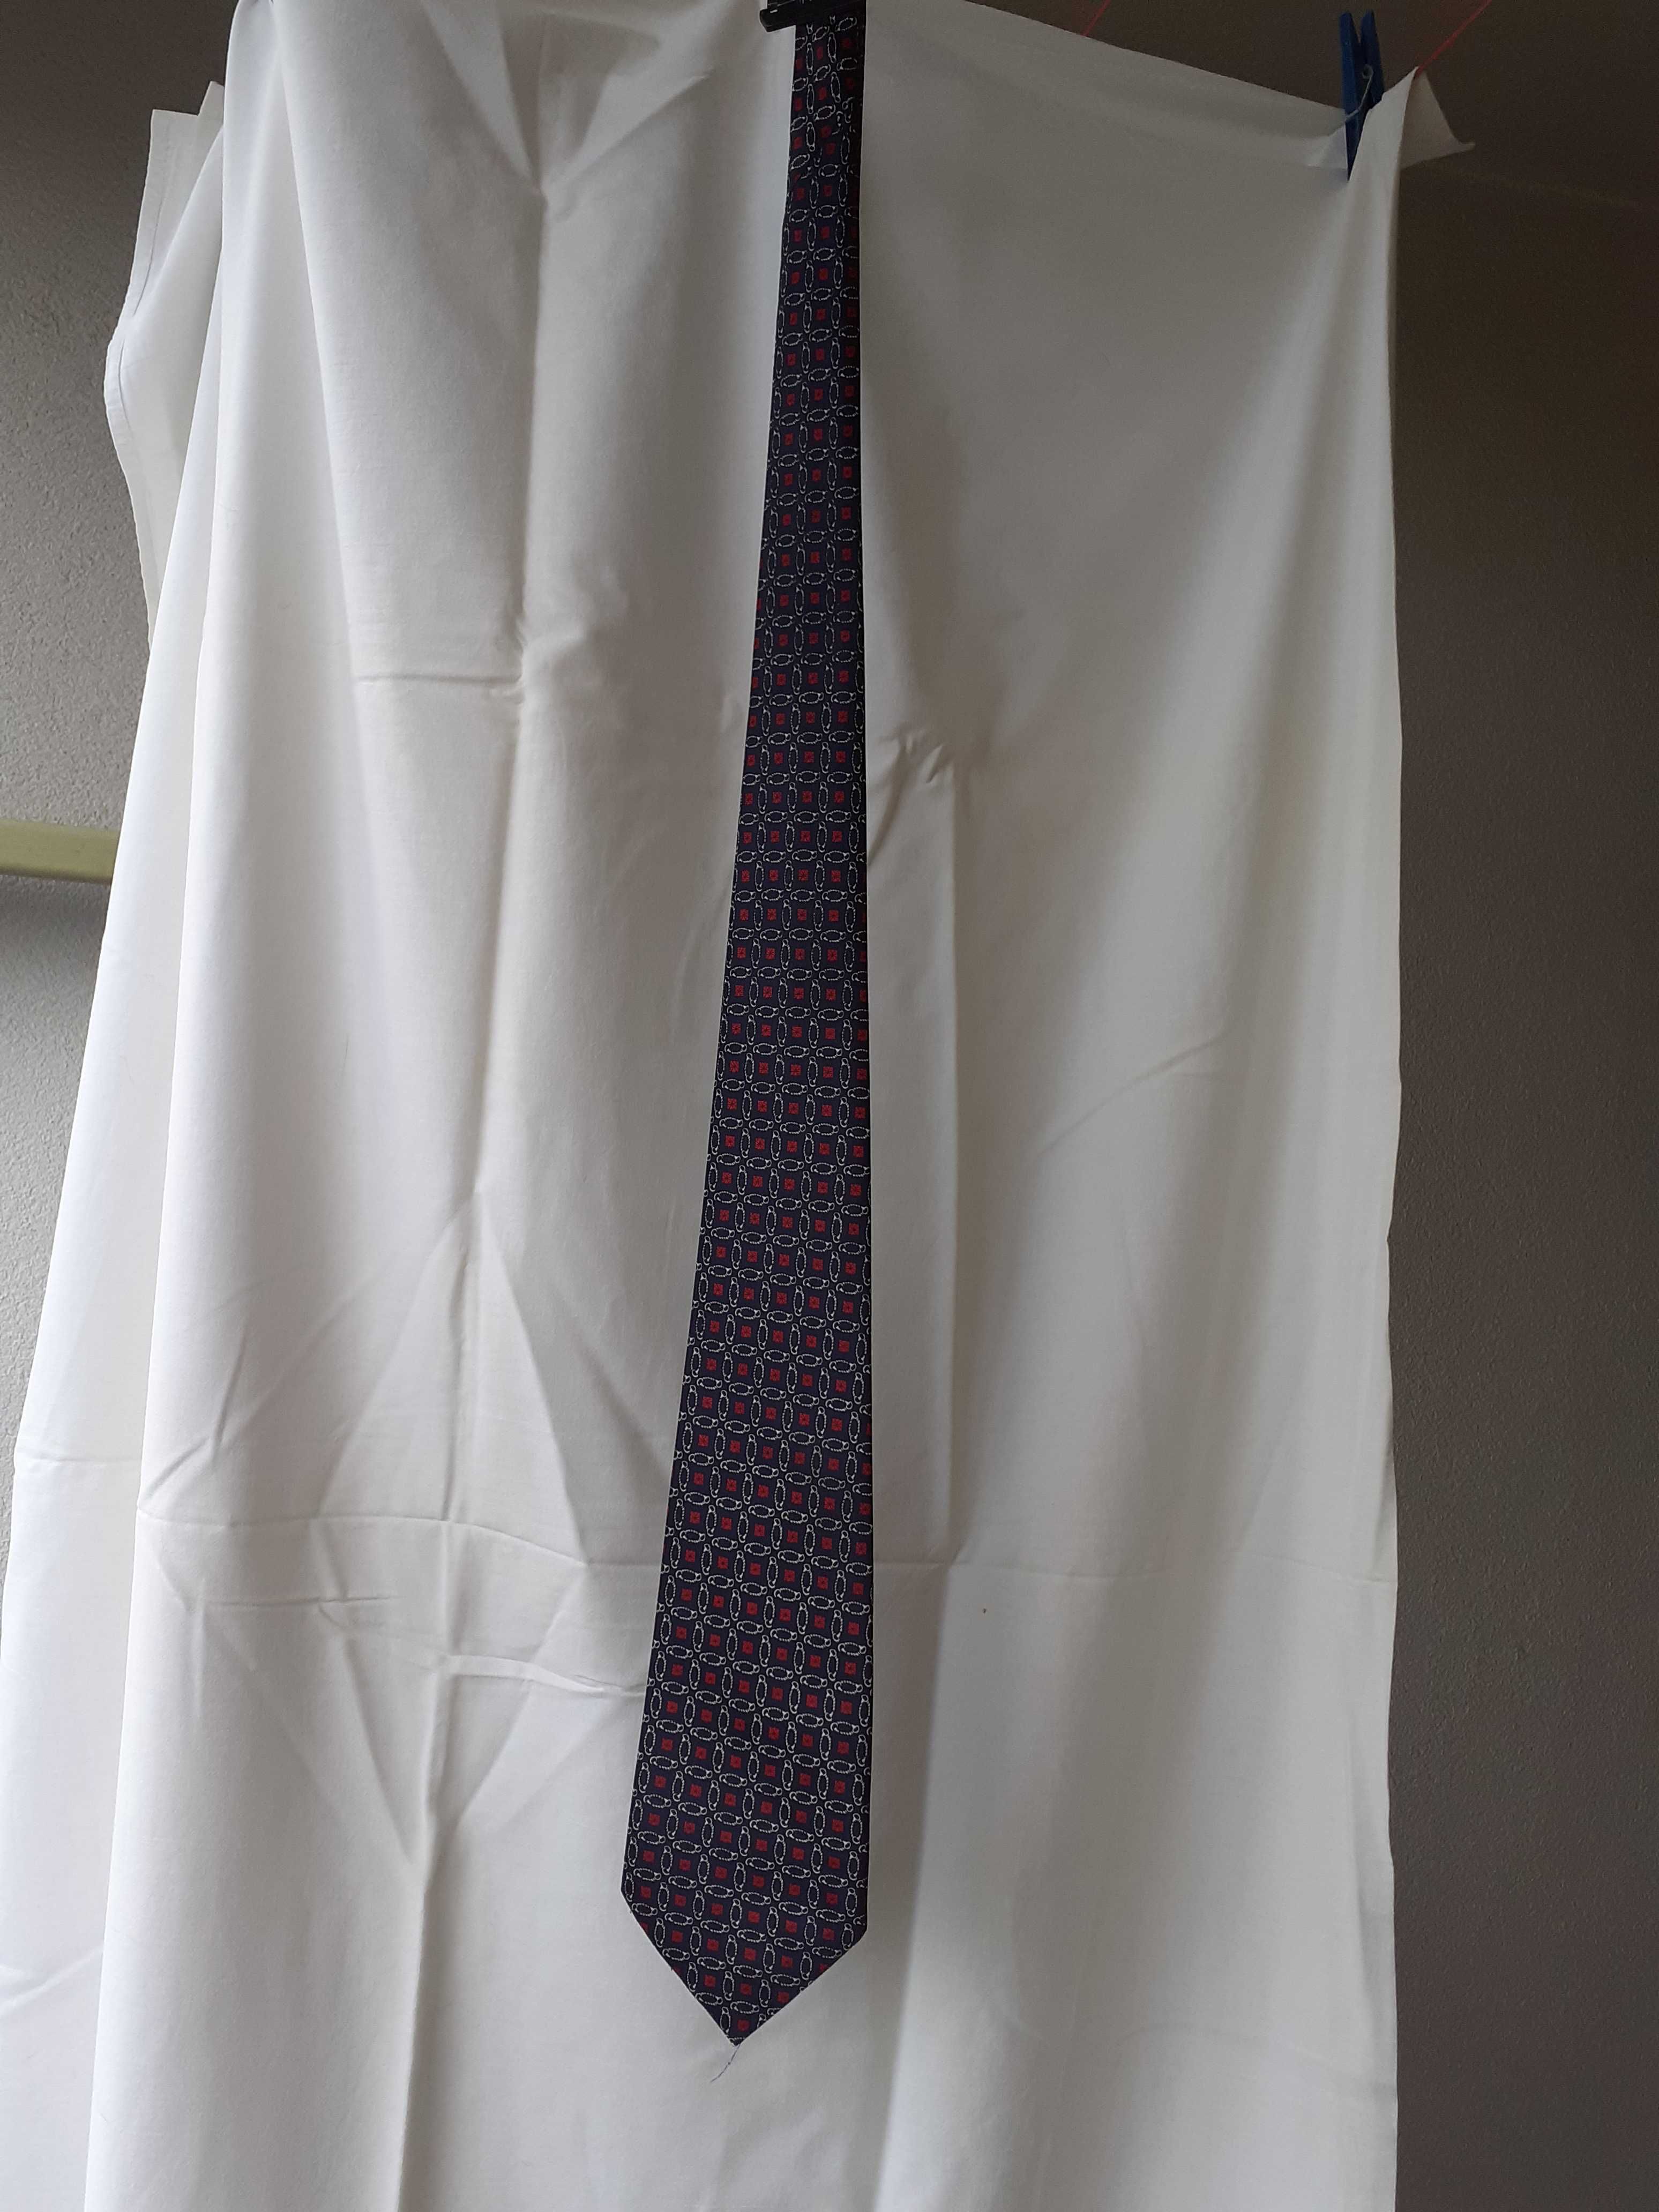 Granatowy krawat jedwabny